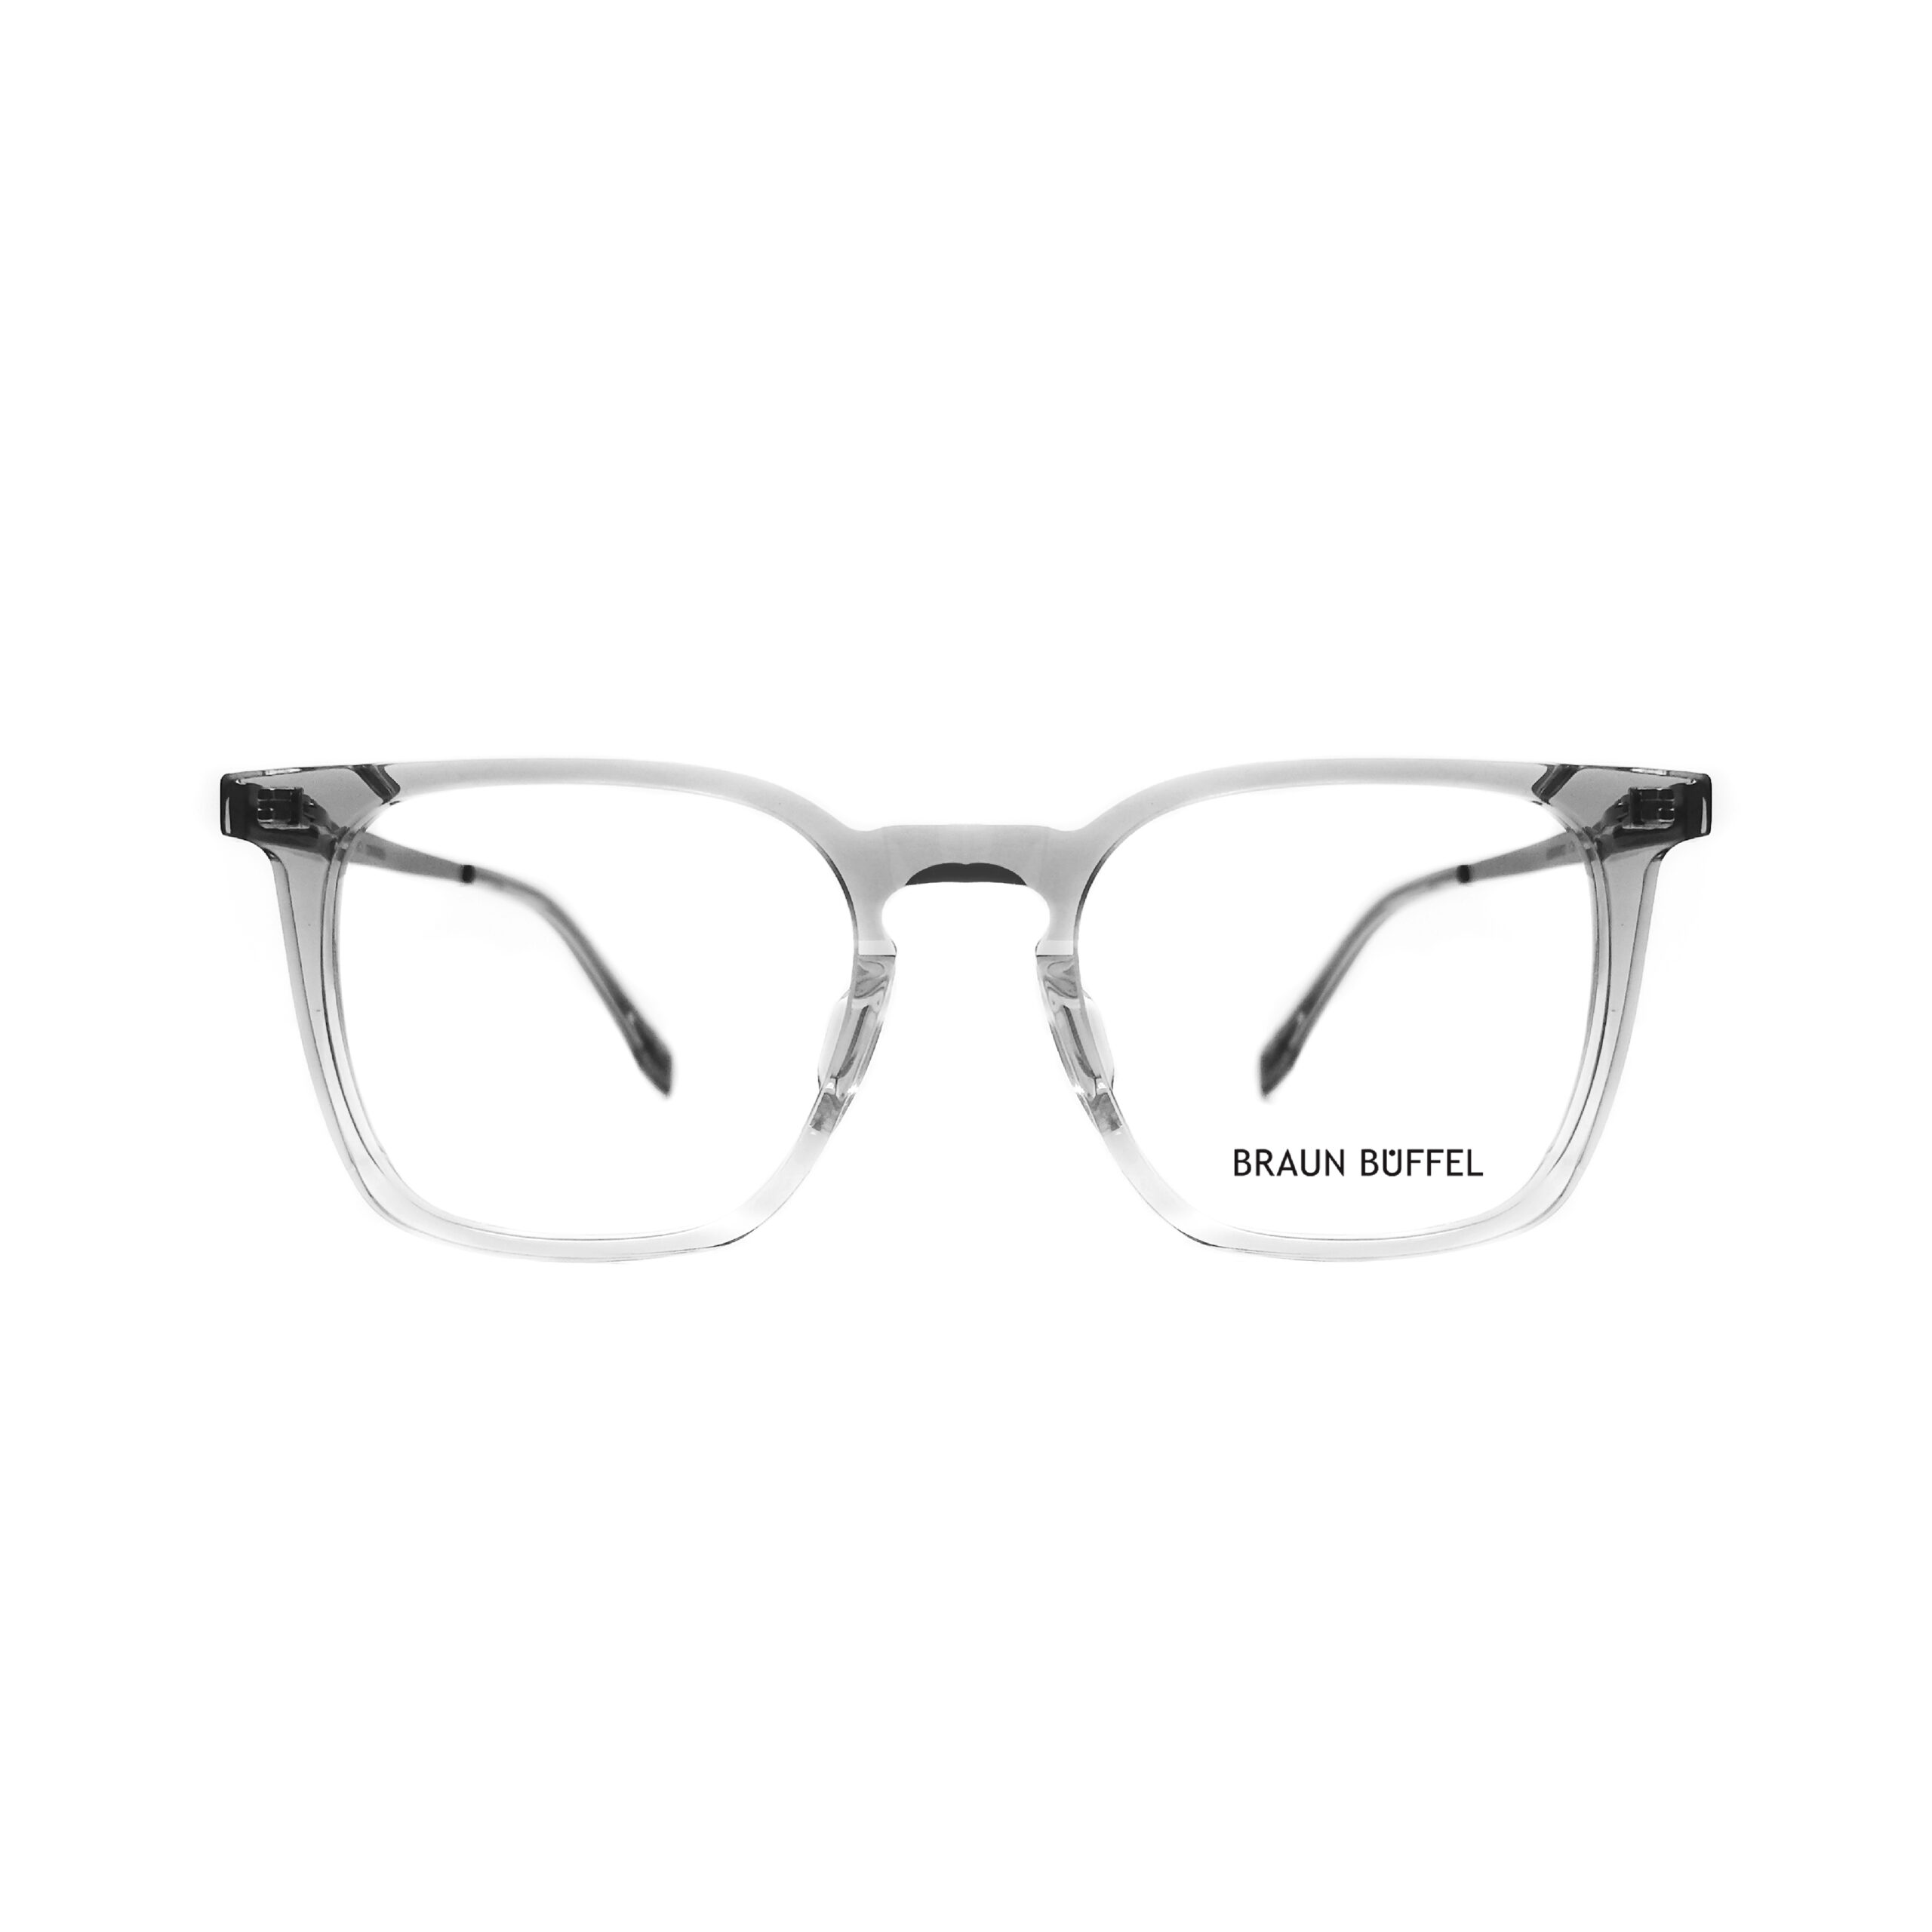 Braun Buffel BB 30002 ? C3 – MOG Eyewear – Metro Optical Group